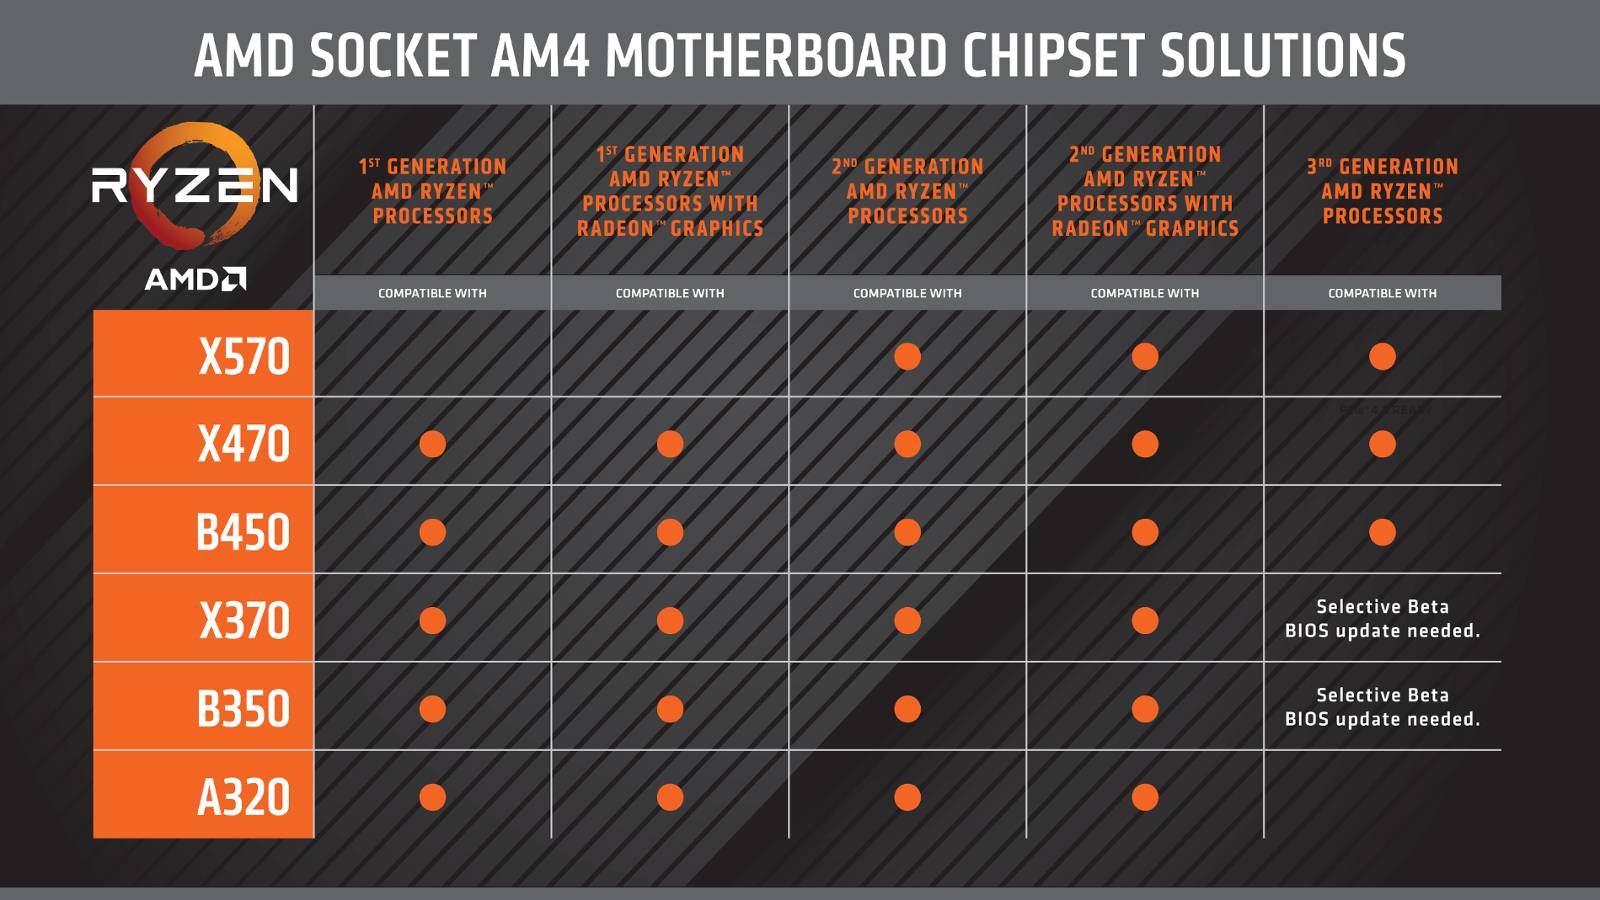 AMD sockel am4 mainboard ryzen overview